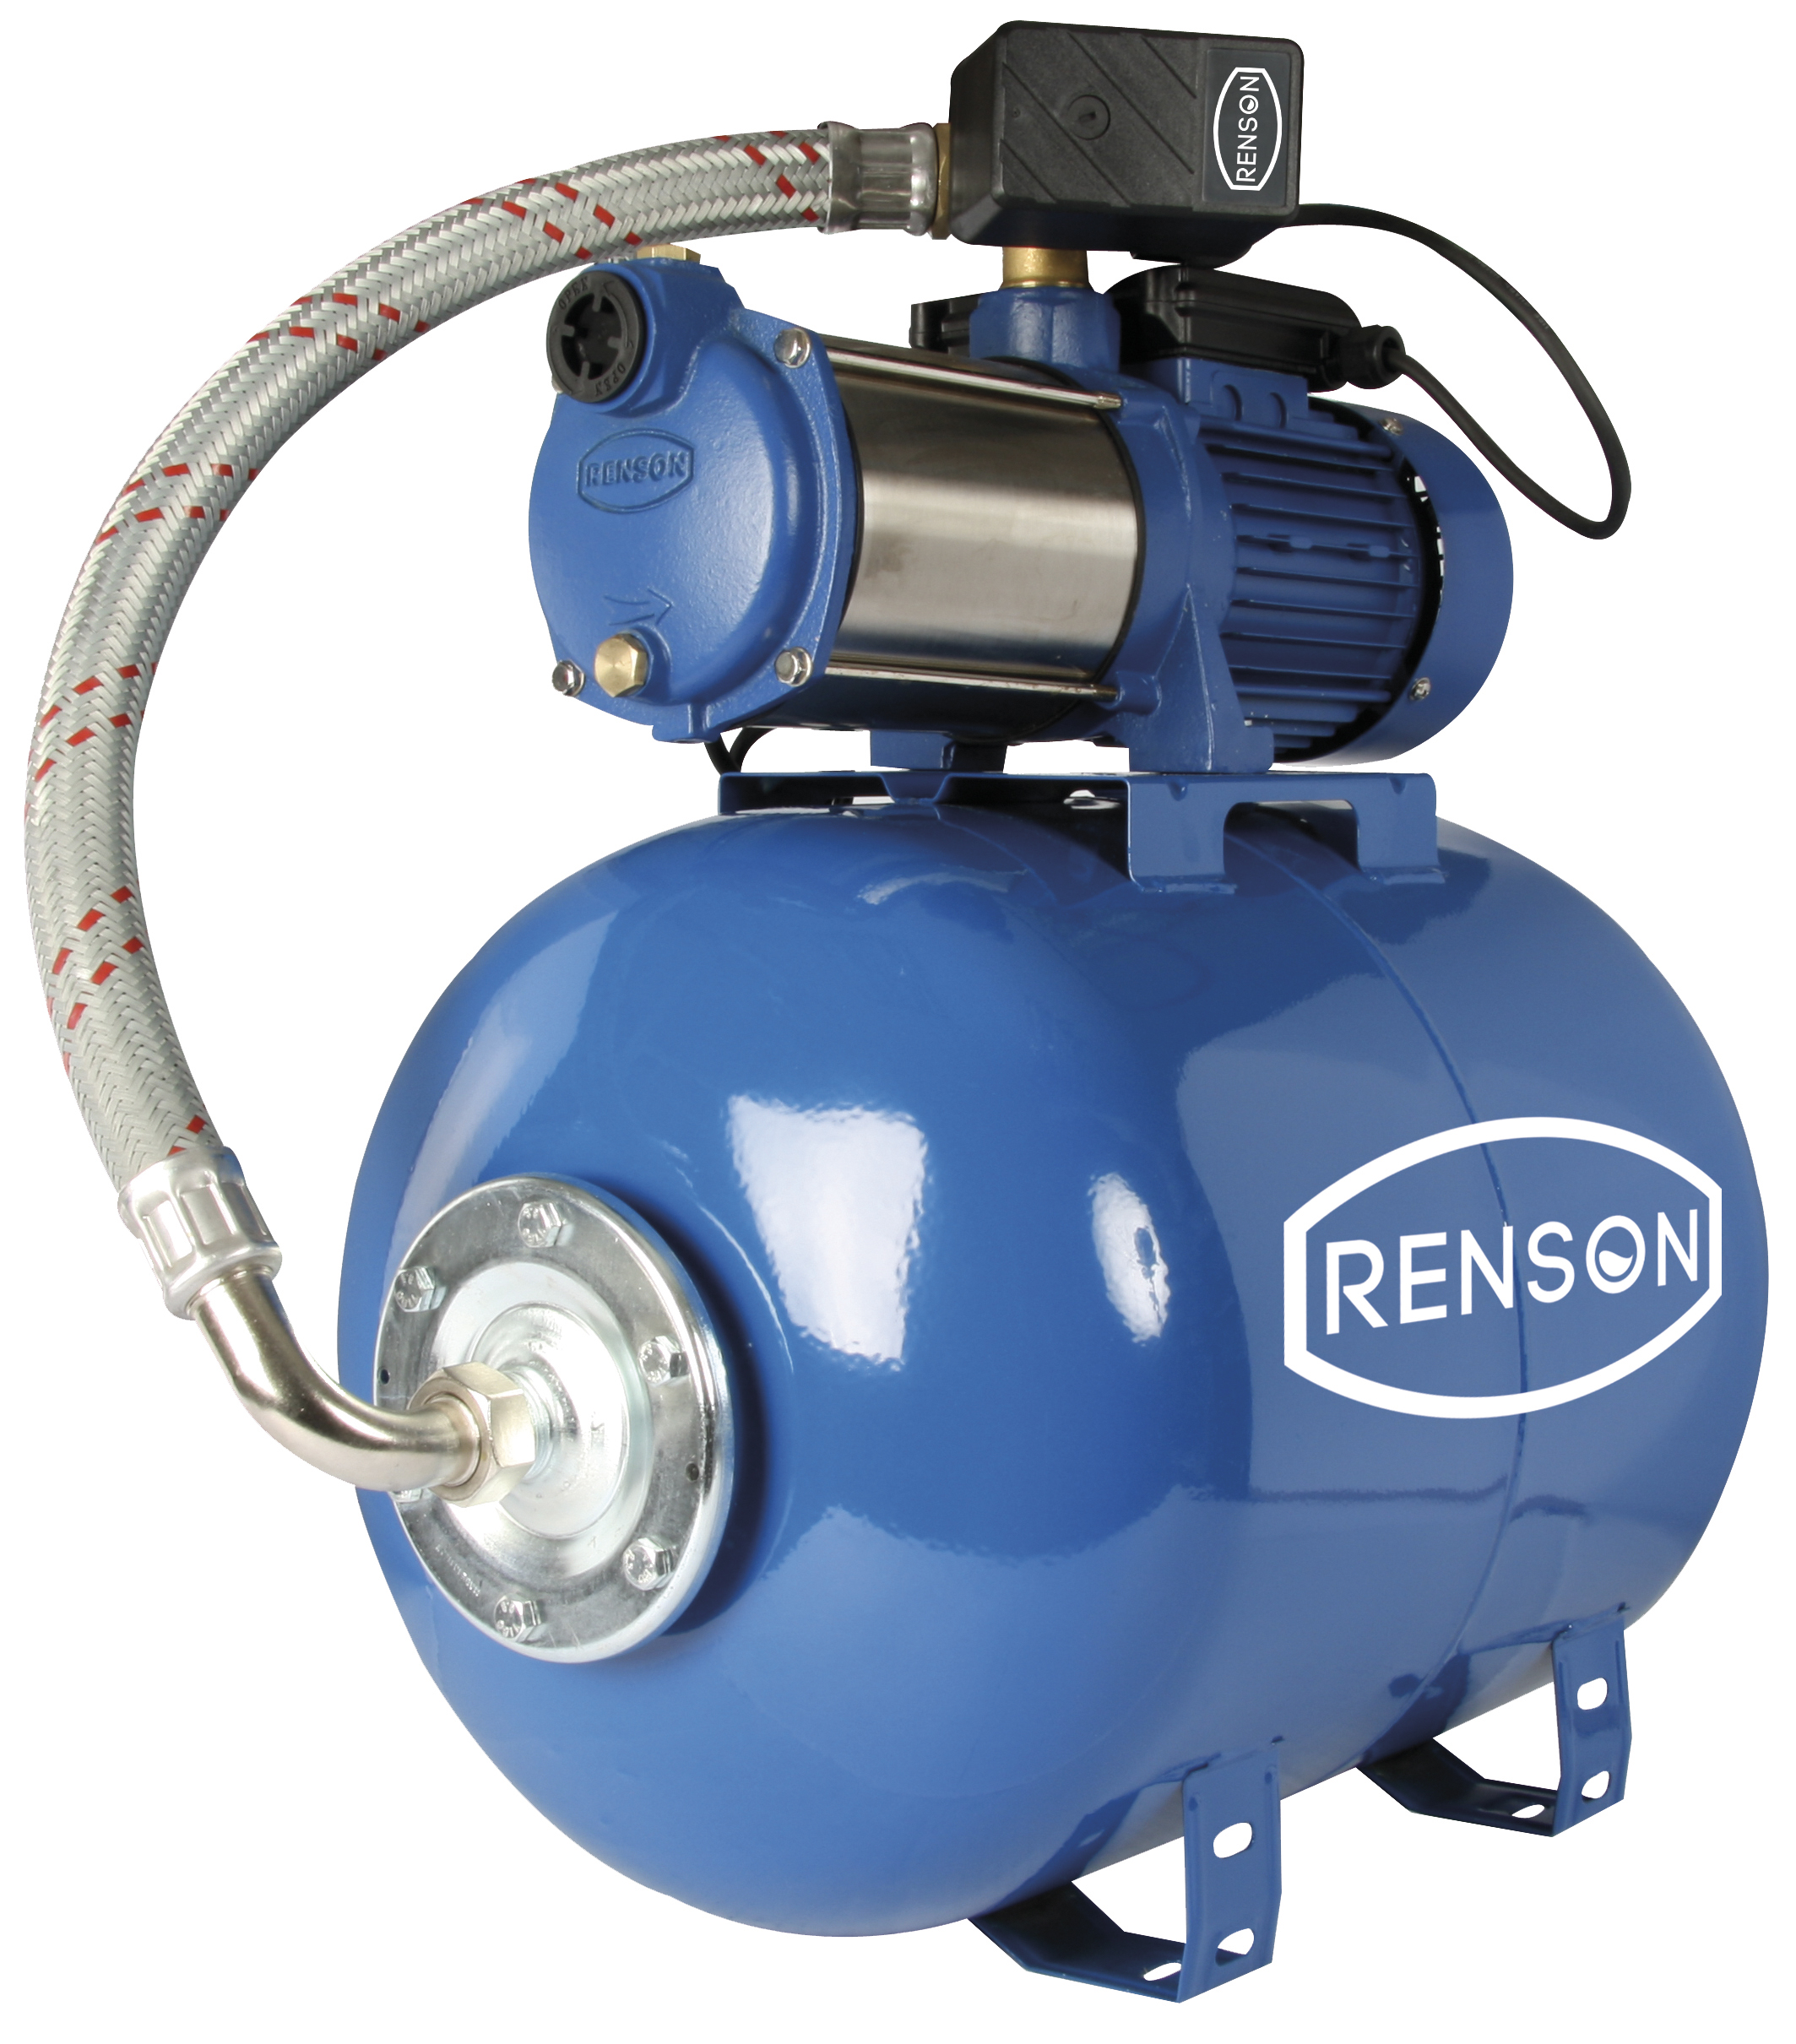 Surpresseur d'eau 80 litres Renson 103460, Profitez des Promos en Cours !